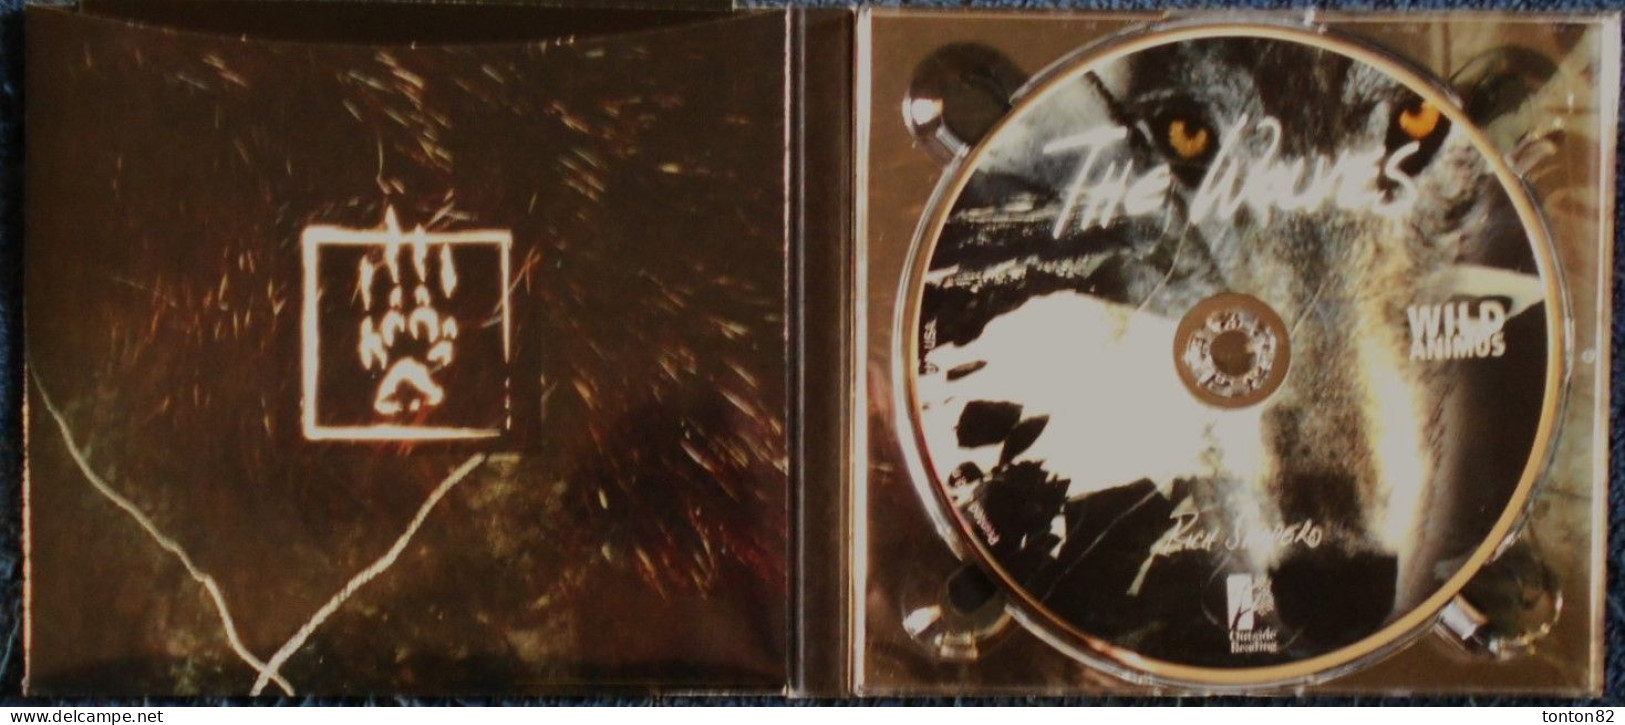 Rich Shapero - WILD ANIMUS - ( Sauvage Animus ) - Outside Reading - ( 2010 ) - Coffret avec un Livre et 3 CD .